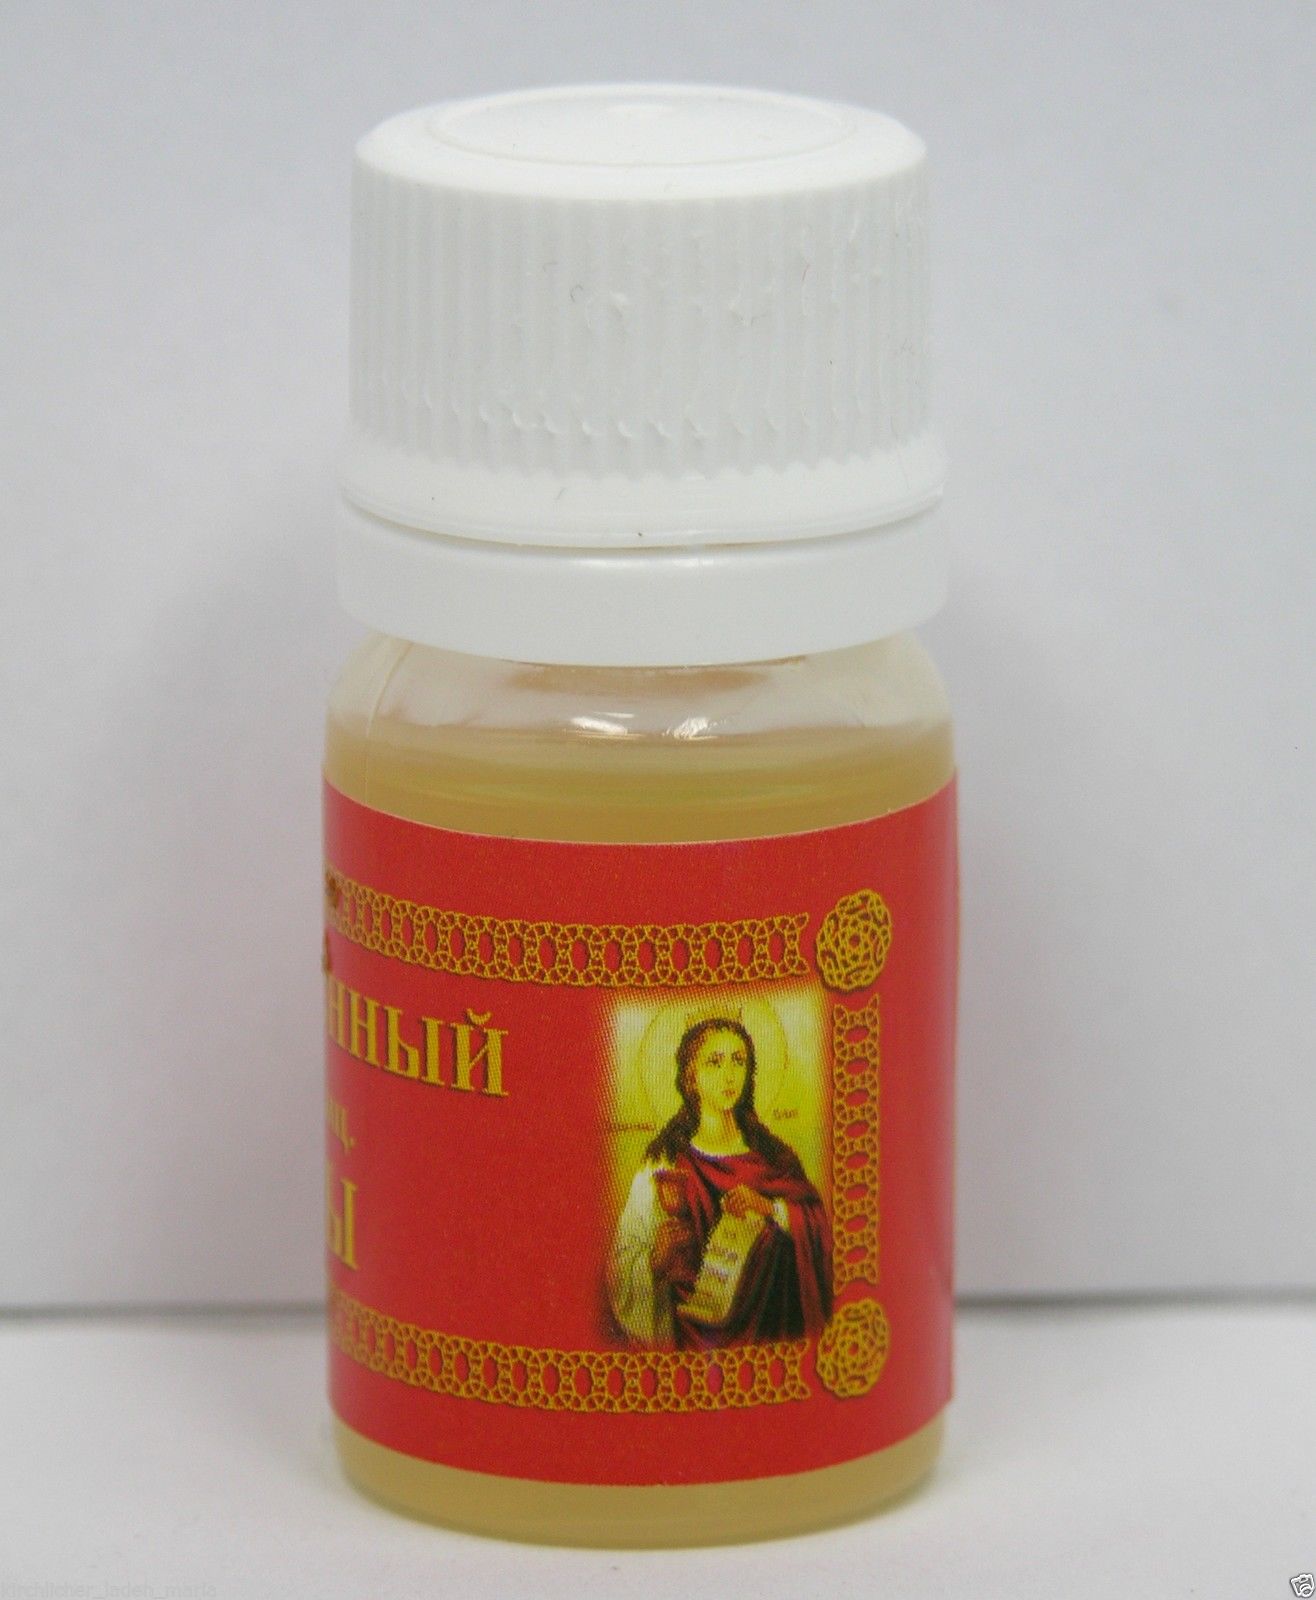 Öl Der heilige Warwara, geweiht 10 ml